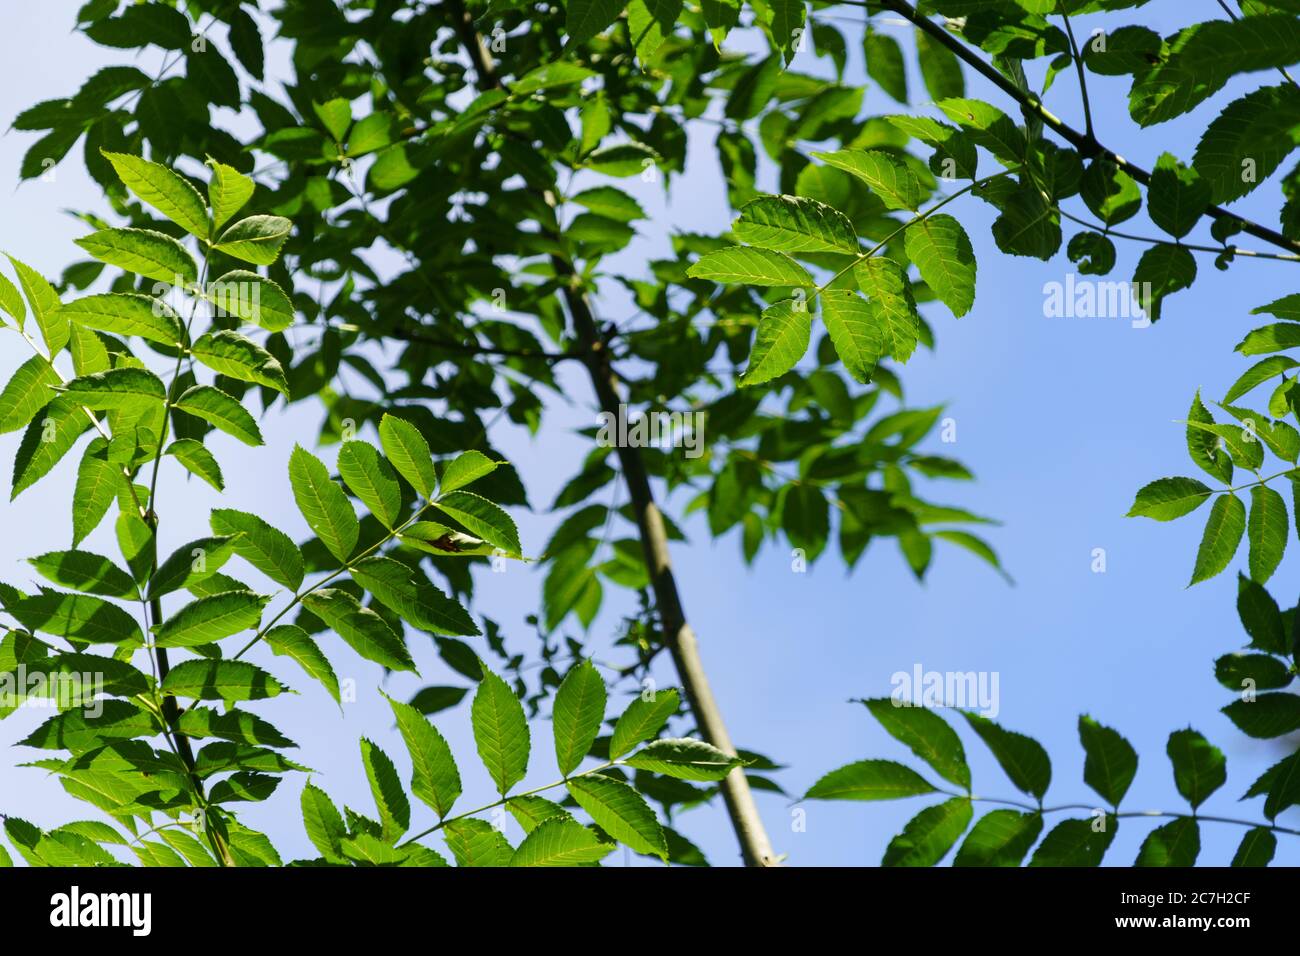 Des feuilles vertes luxuriantes ensoleillées et un ciel bleu clair. Banque D'Images